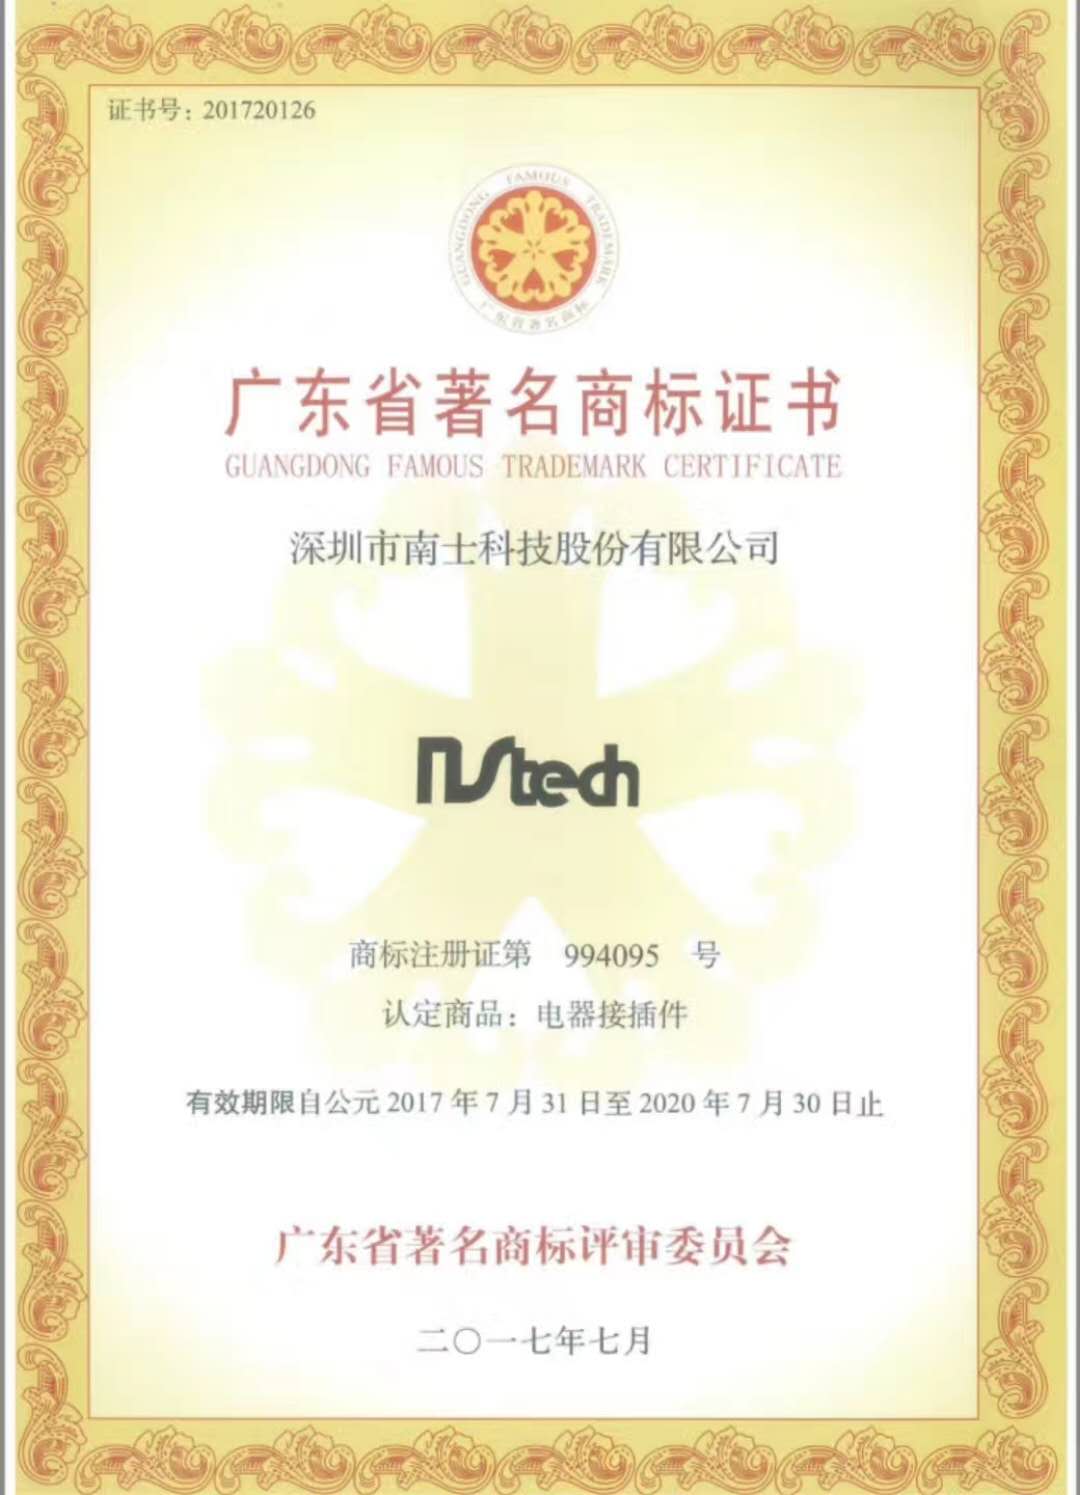 热烈祝贺总部深圳南士科技股份有限公司荣获广东省名商标